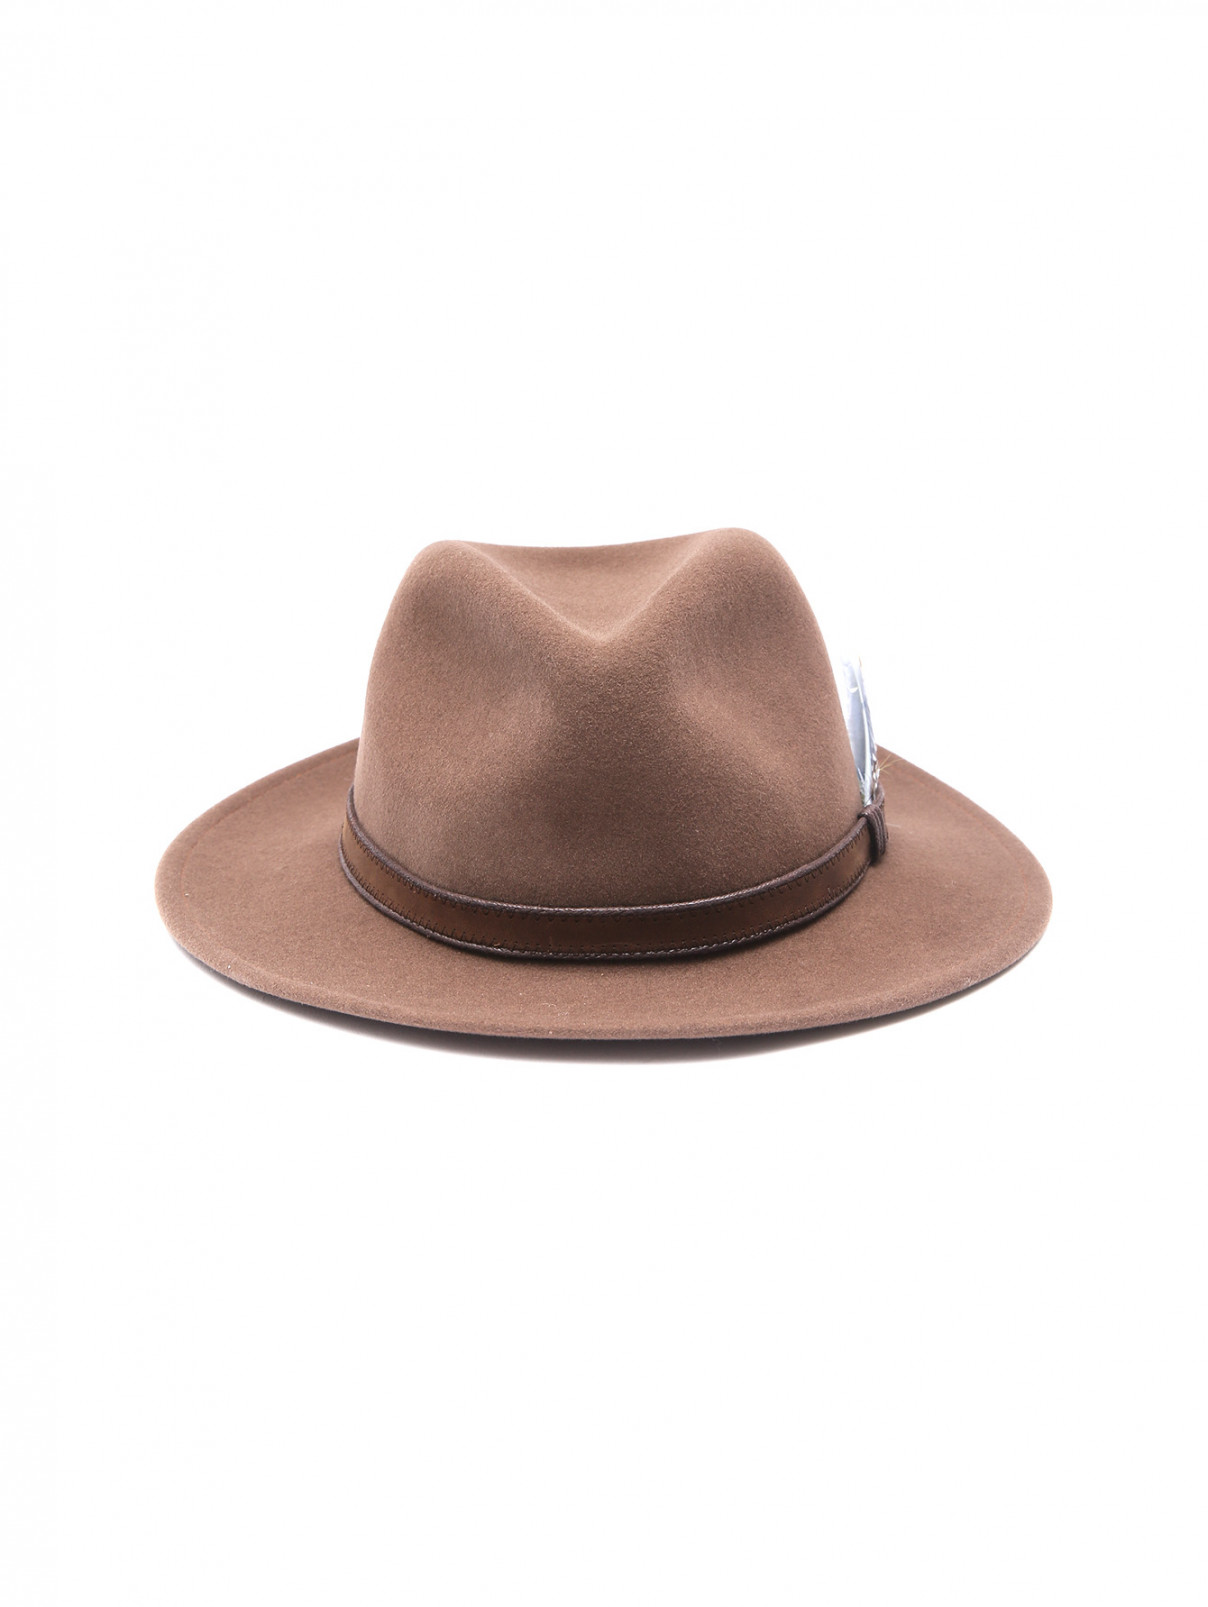 Шляпа из шерсти с декоративным пером Stetson  –  Общий вид  – Цвет:  Коричневый